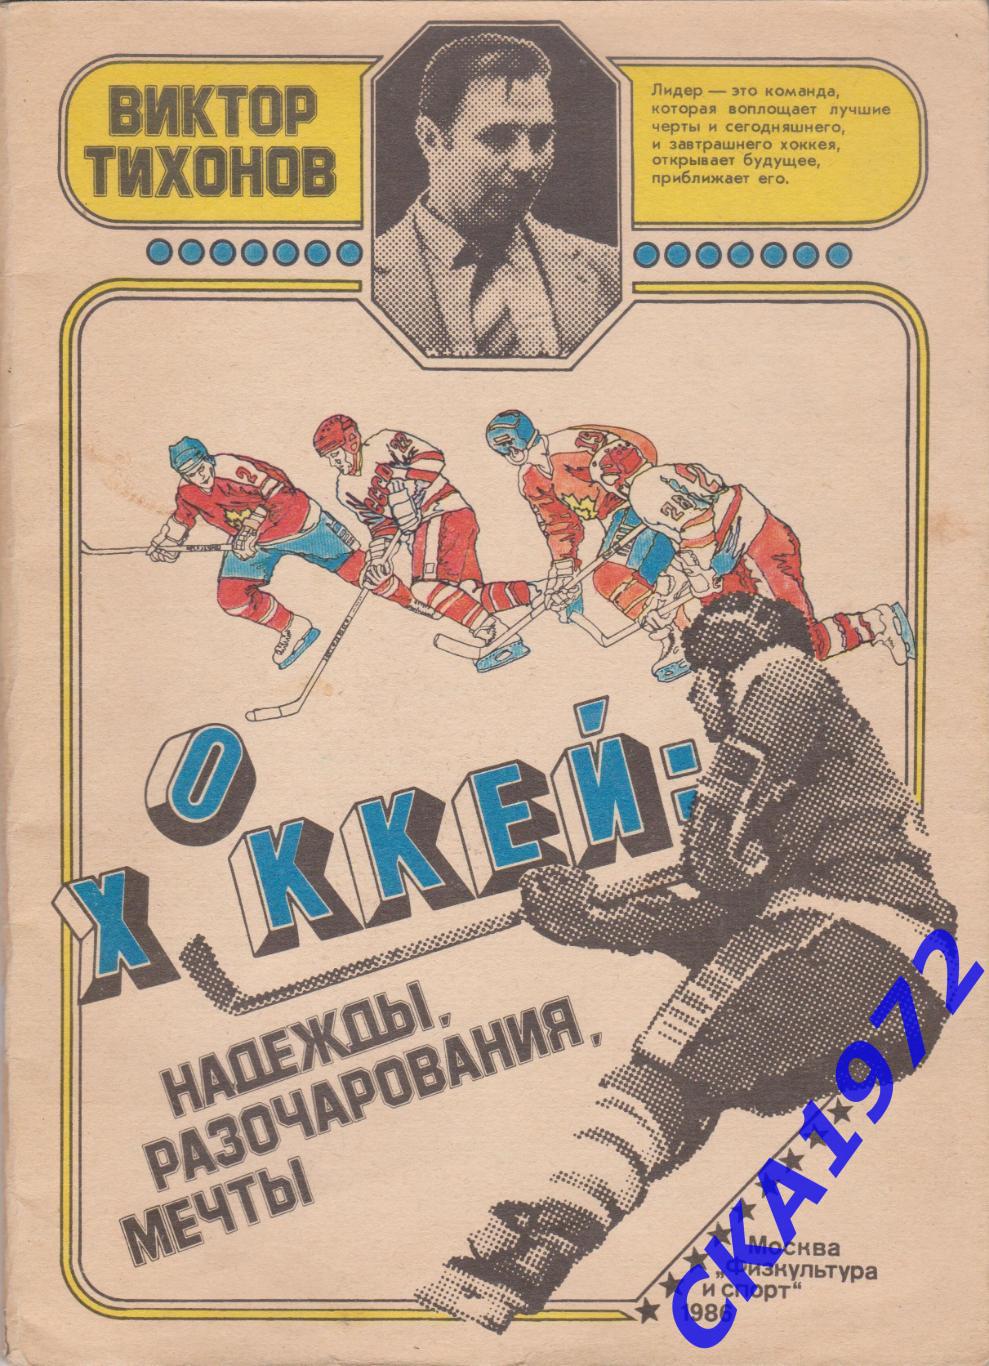 Виктор Тихонов. Хоккей: надежды, разочарования, мечты. Издание - ФиС 1986